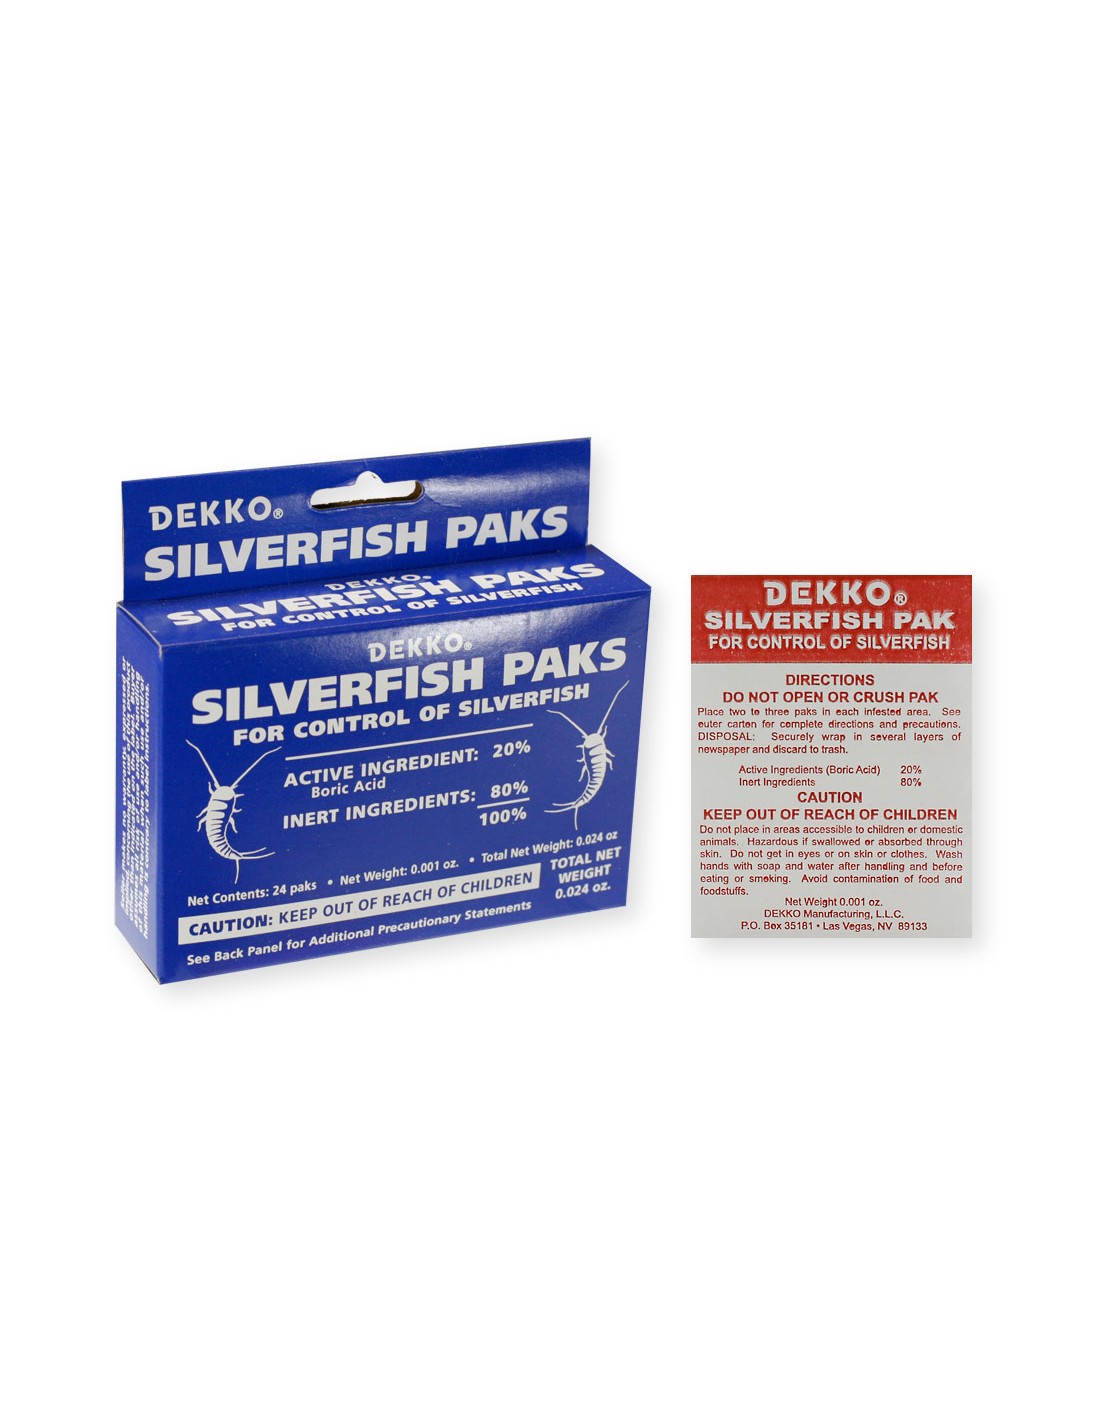 When will your Dekko Silverfish Bait Paks be in stock?